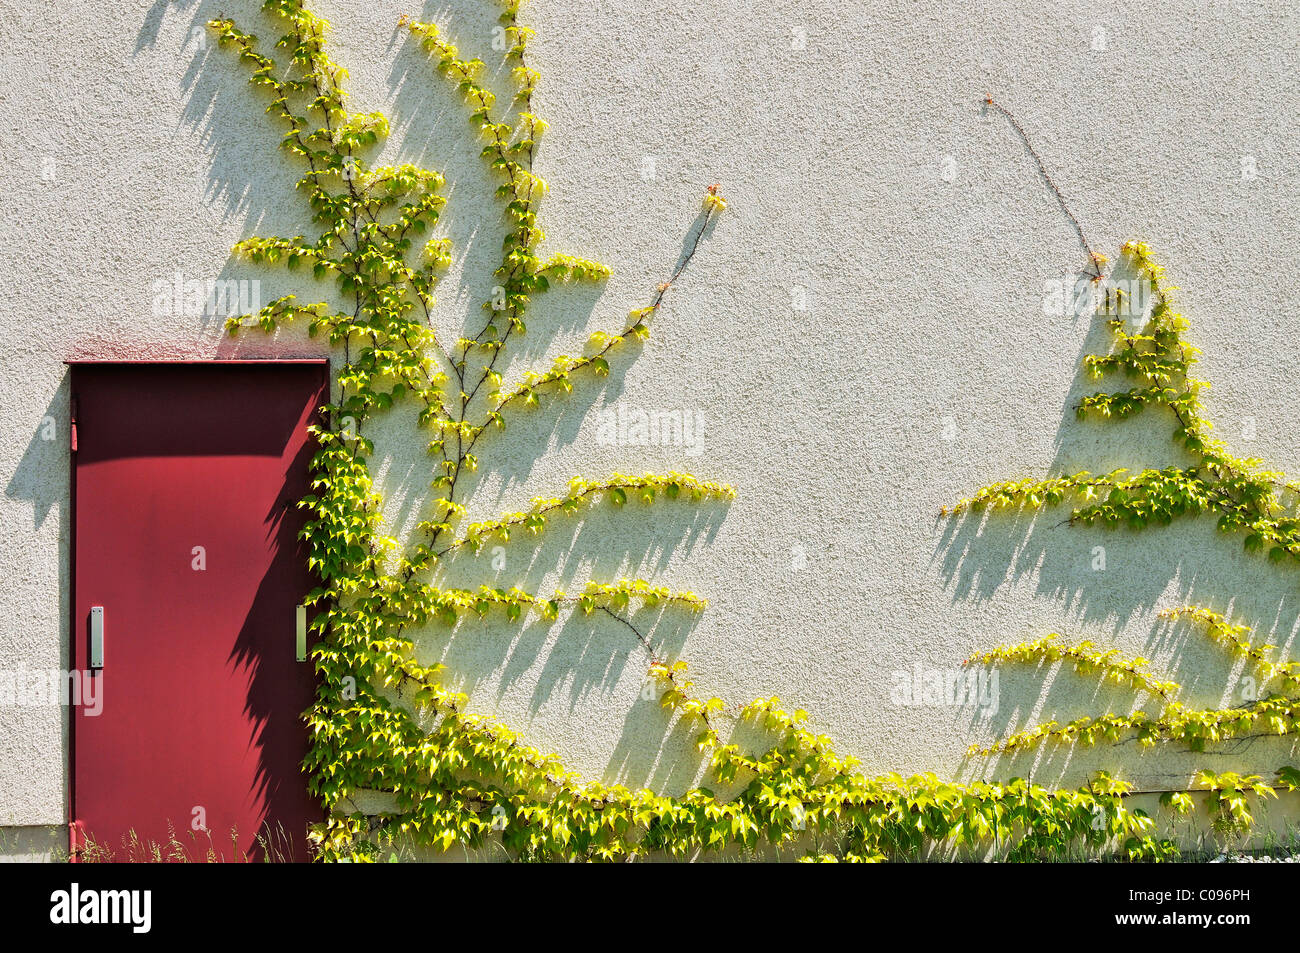 Reductor japonés, Boston ivy, Uva, Ivy, Ivy, japoneses y woodbine (Parthenocissus tricuspidata) en una pared de la casa, Munich Foto de stock